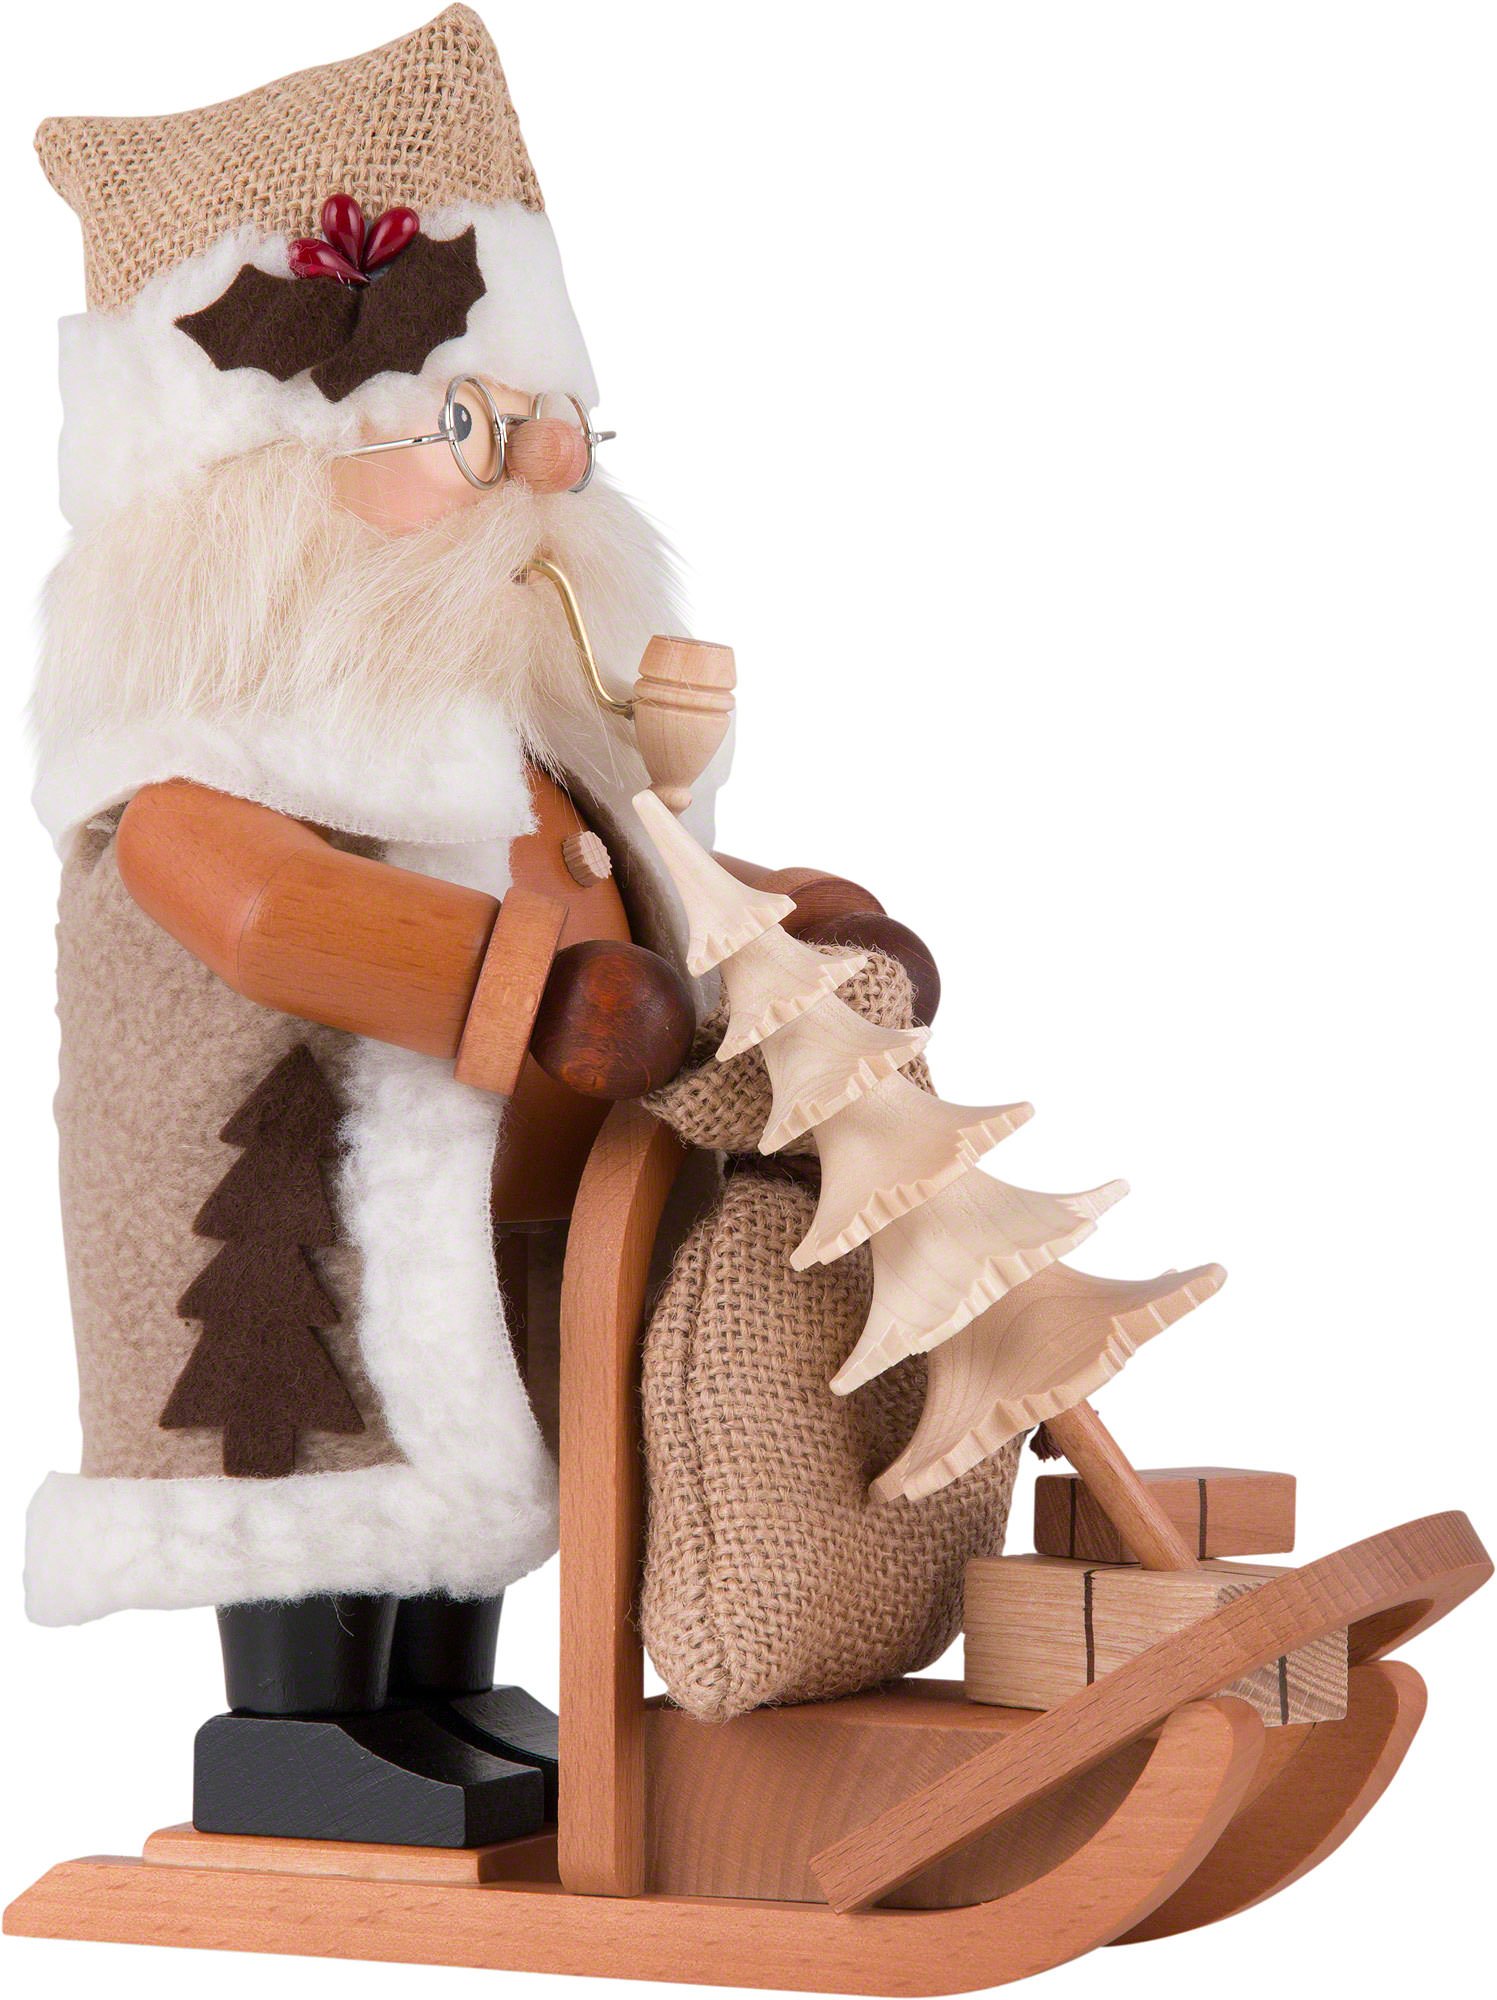 Räuchermännchen Weihnachtsmann mit Schlitten (28 cm) von Christian Ulbricht